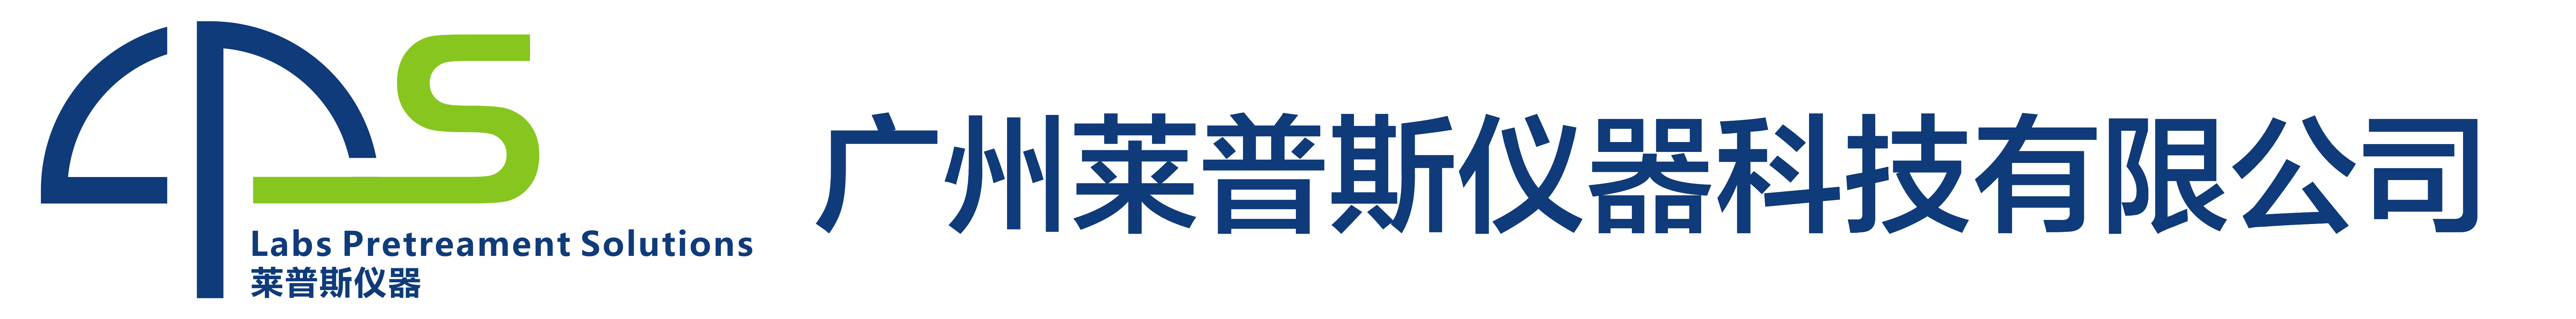 广州莱普斯仪器科技有限公司-氮气发生器，氮吹仪，研磨仪，粉碎机